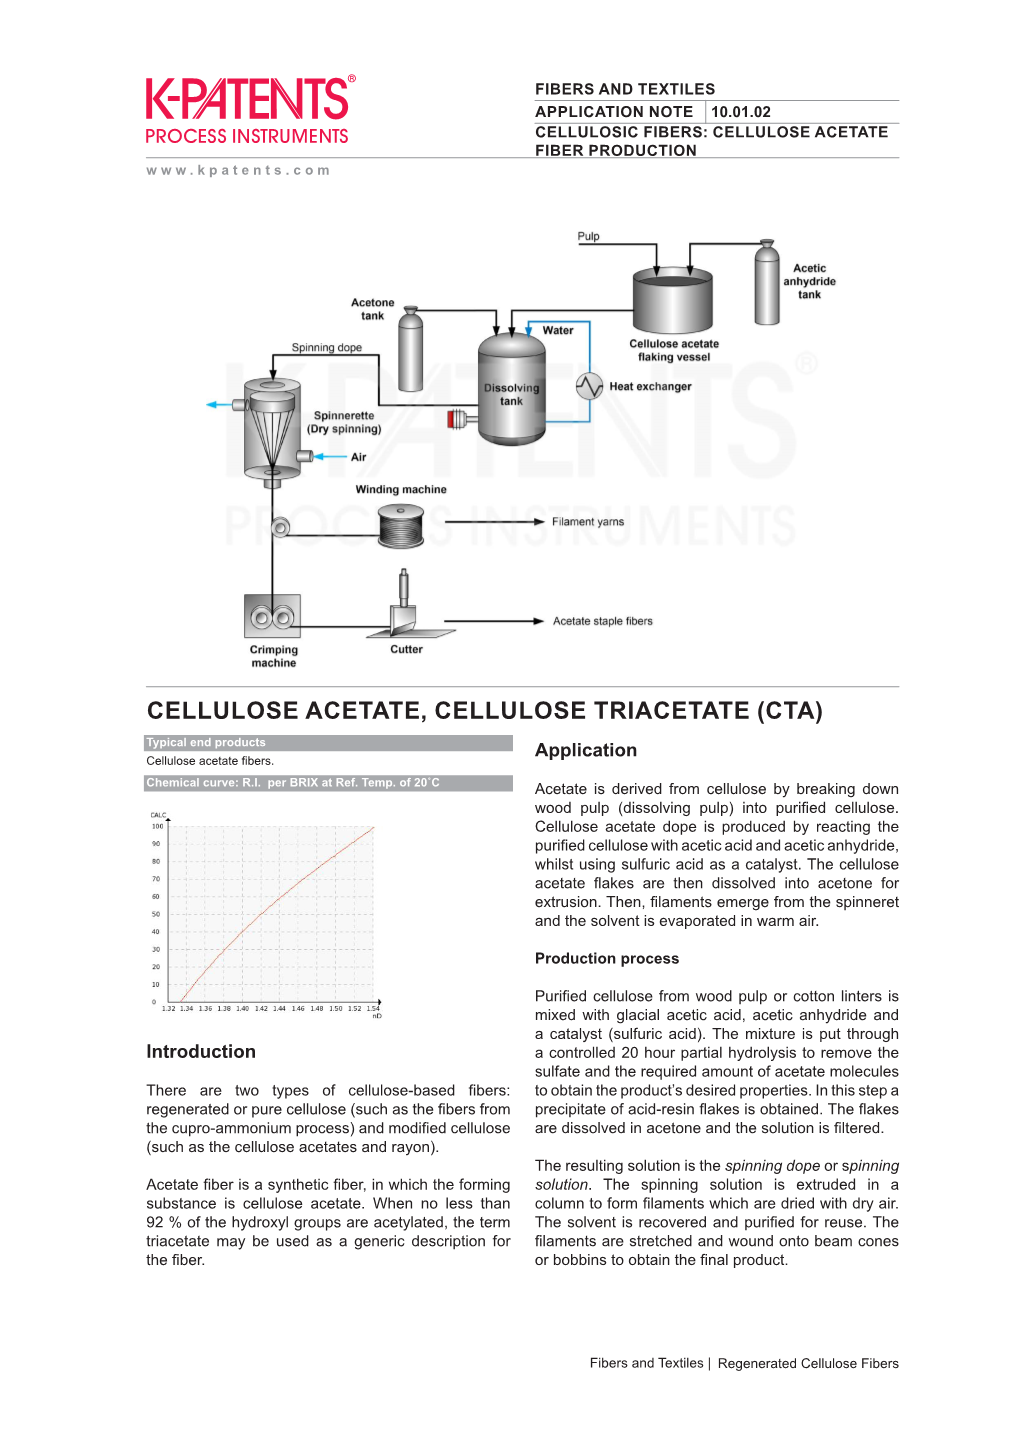 10.01.02 Cellulose Acetate Fiber Production